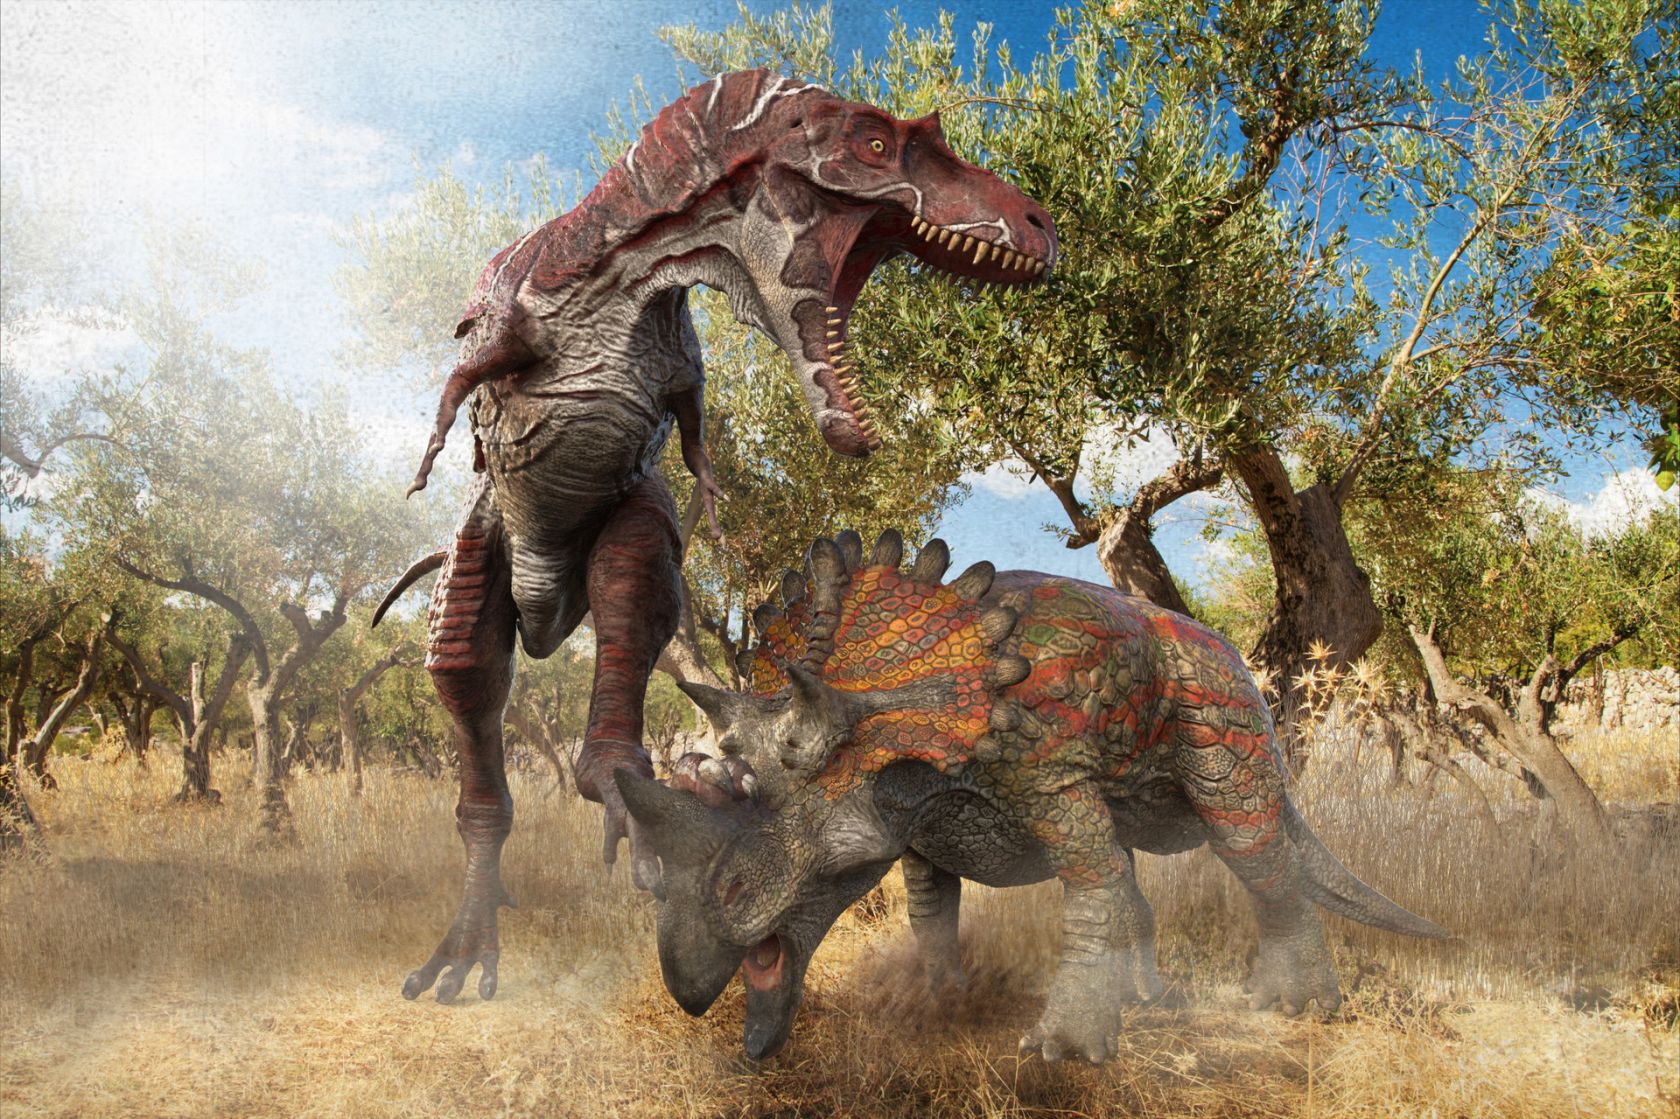 Albertosaurus scena di caccia